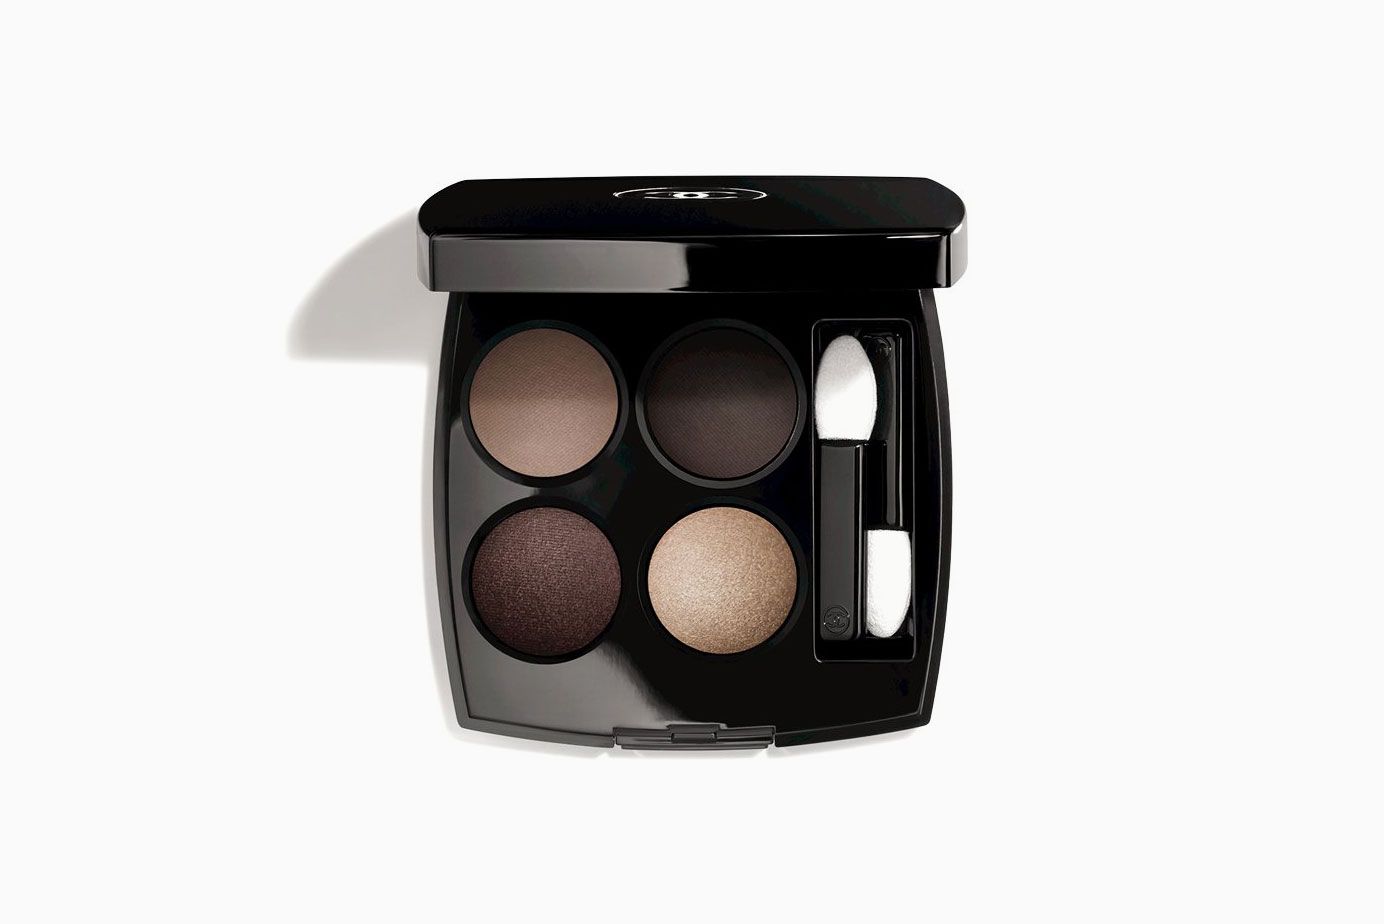 Chanel Paris Makeup set 💓 - Pretty Girl online Shop